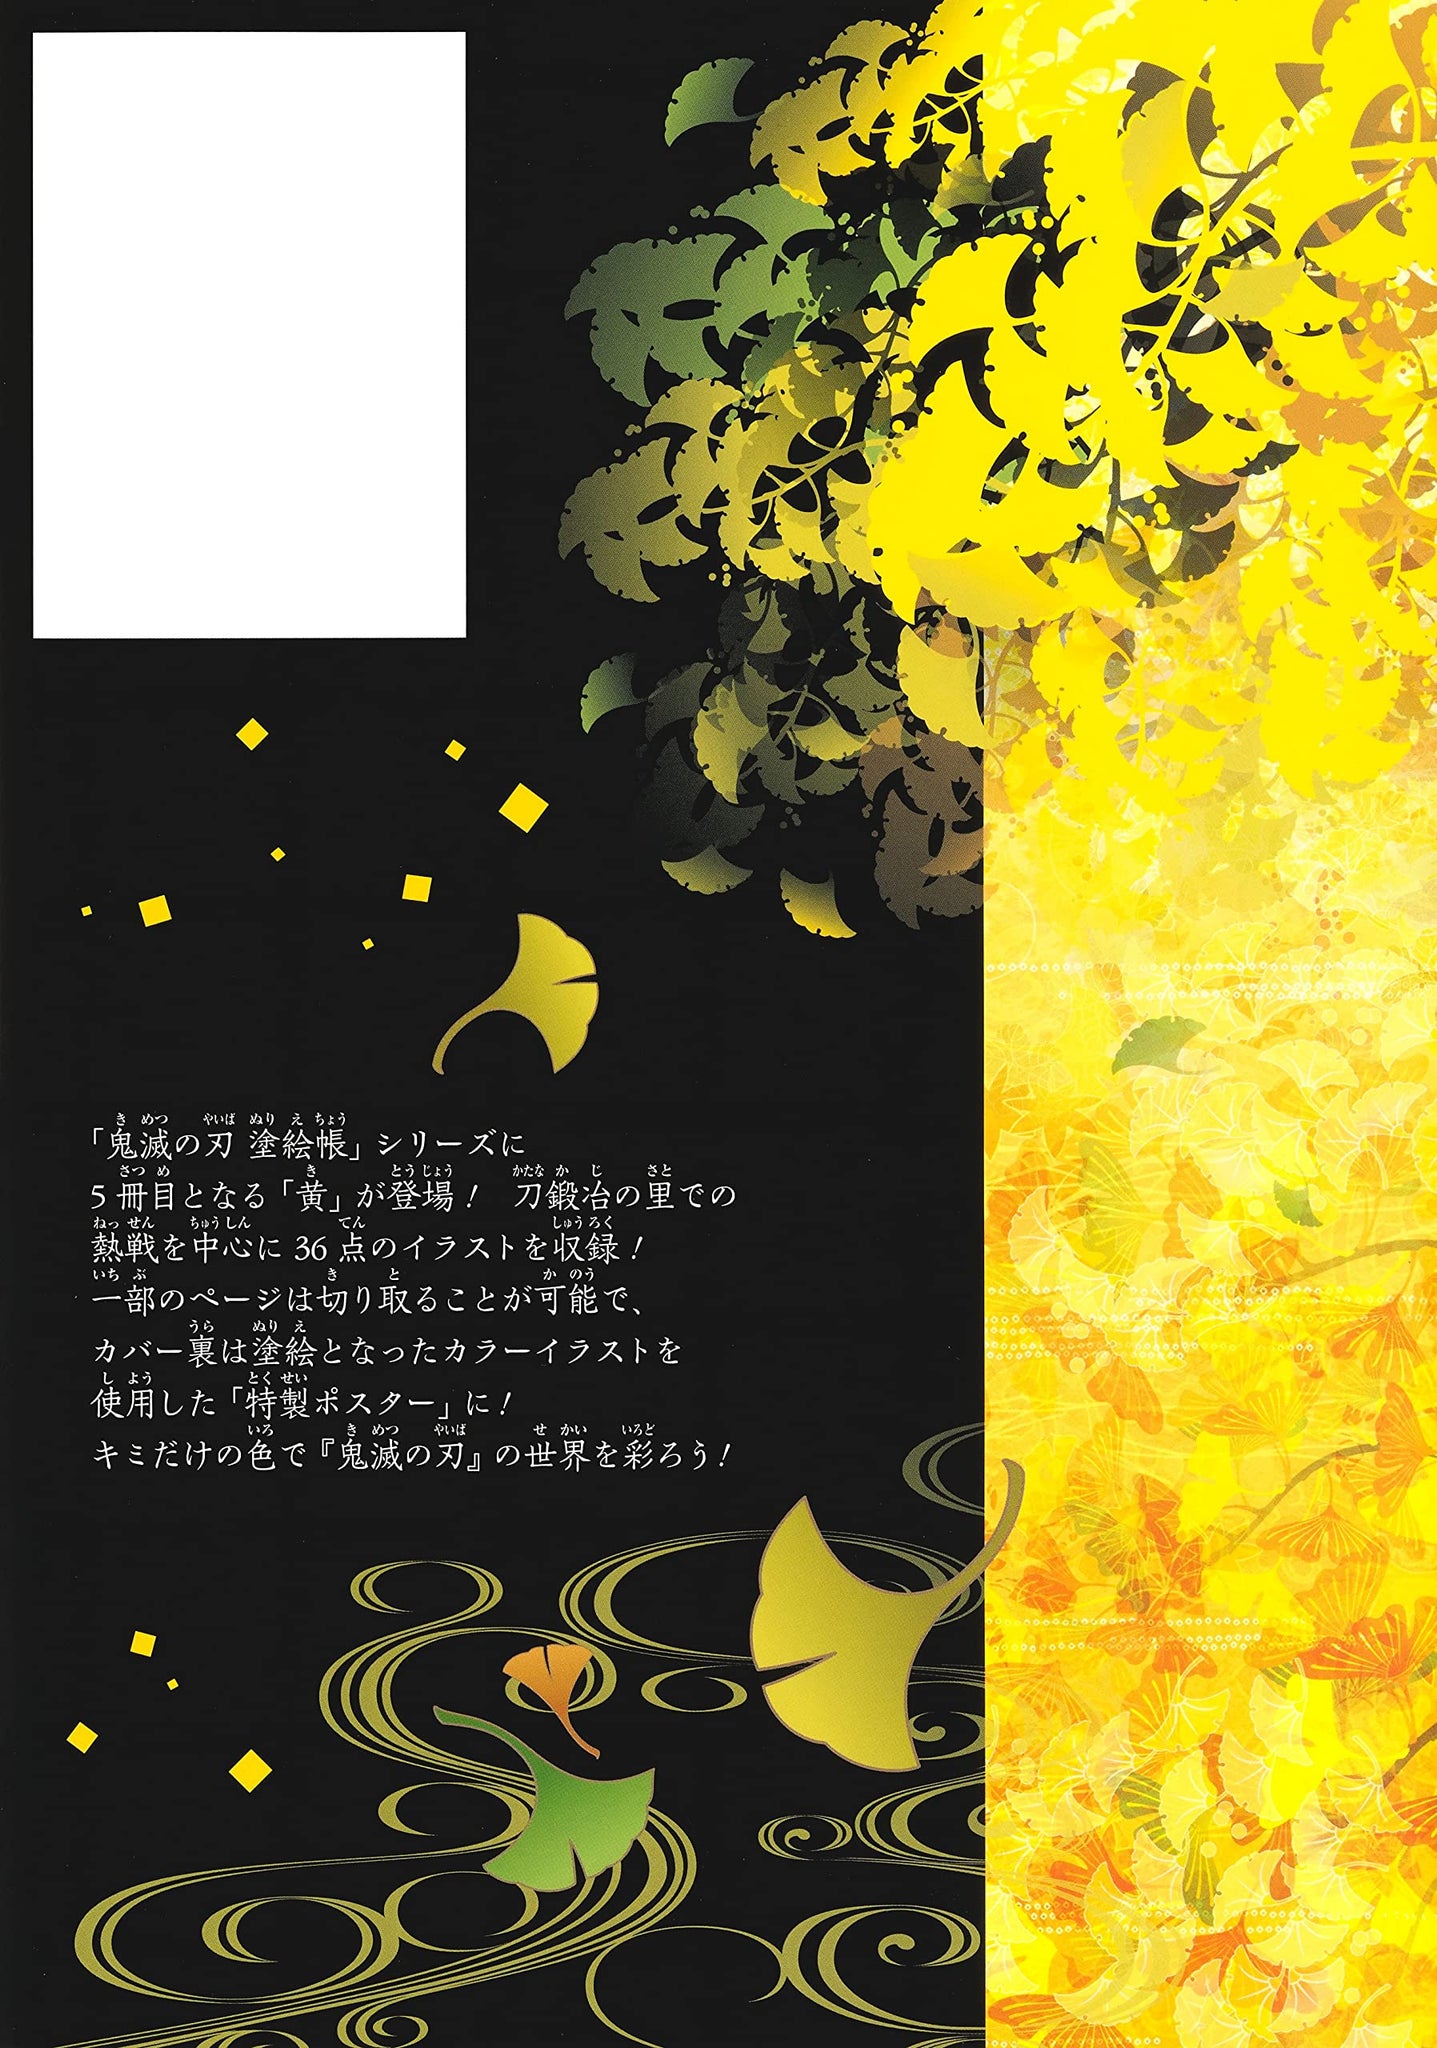 Kimetsu no Yaiba (Demon Slayer) Nurie-cho Ki - Coloring book -  ISBN:9784087900804